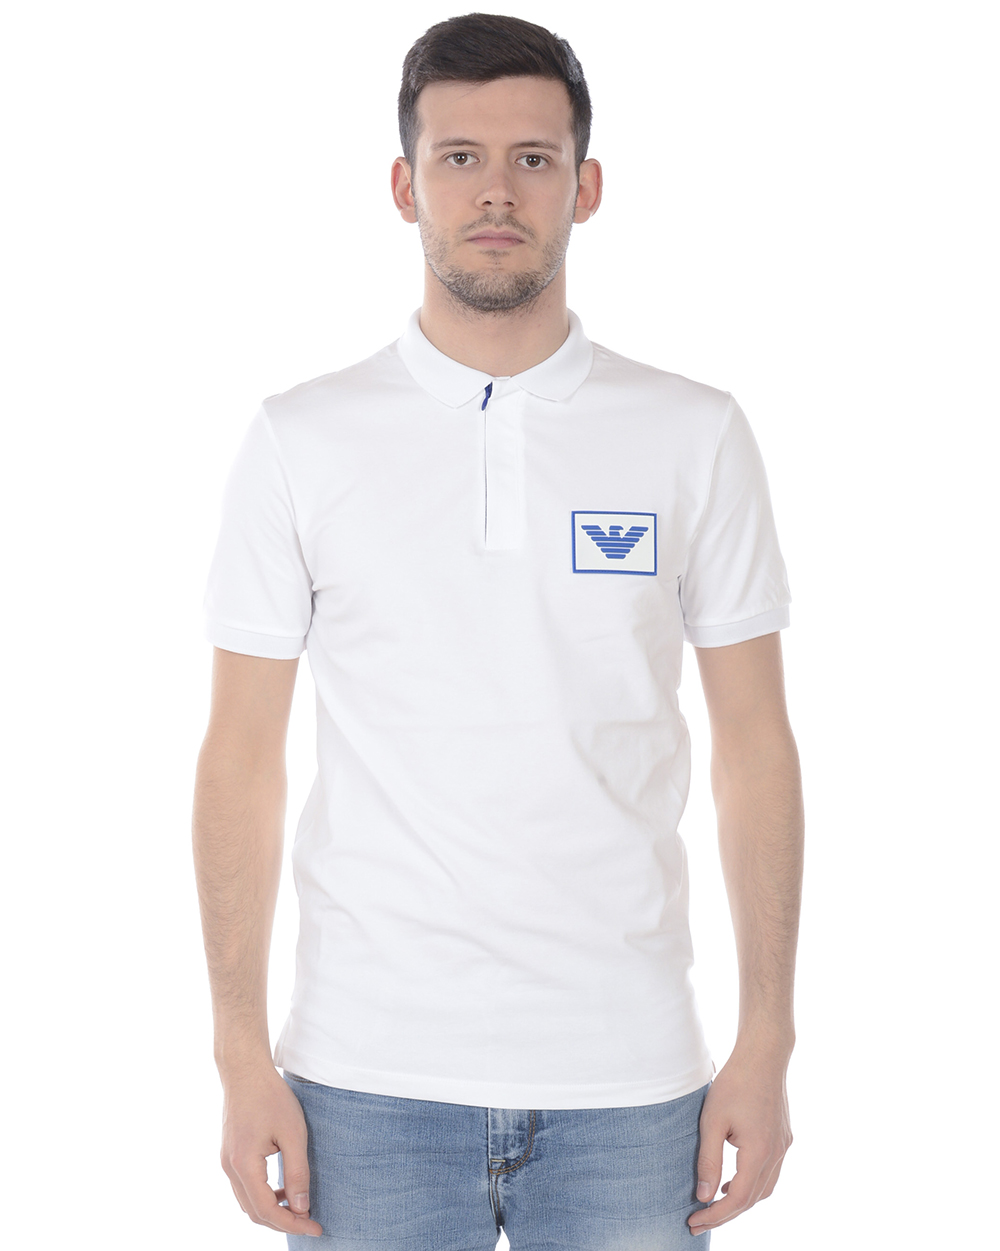 Emporio Armani Polo Shirt Cotton Man White 3H1F90 1J37Z 100 Sz. L MAKE OFFER